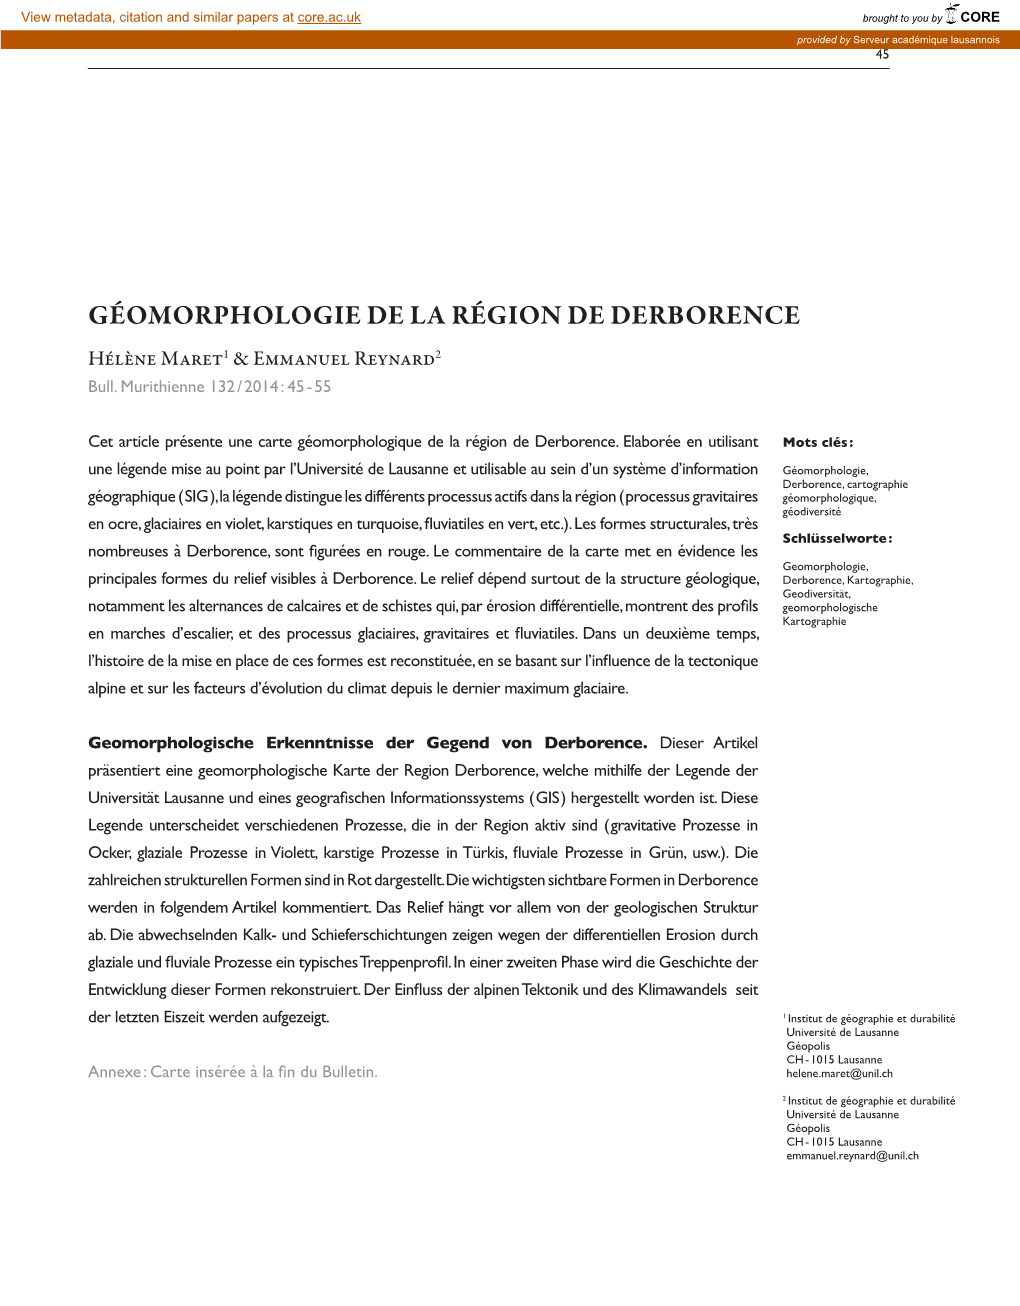 GÉOMORPHOLOGIE DE LA RÉGION DE DERBORENCE H  M1 & E R2 Bull